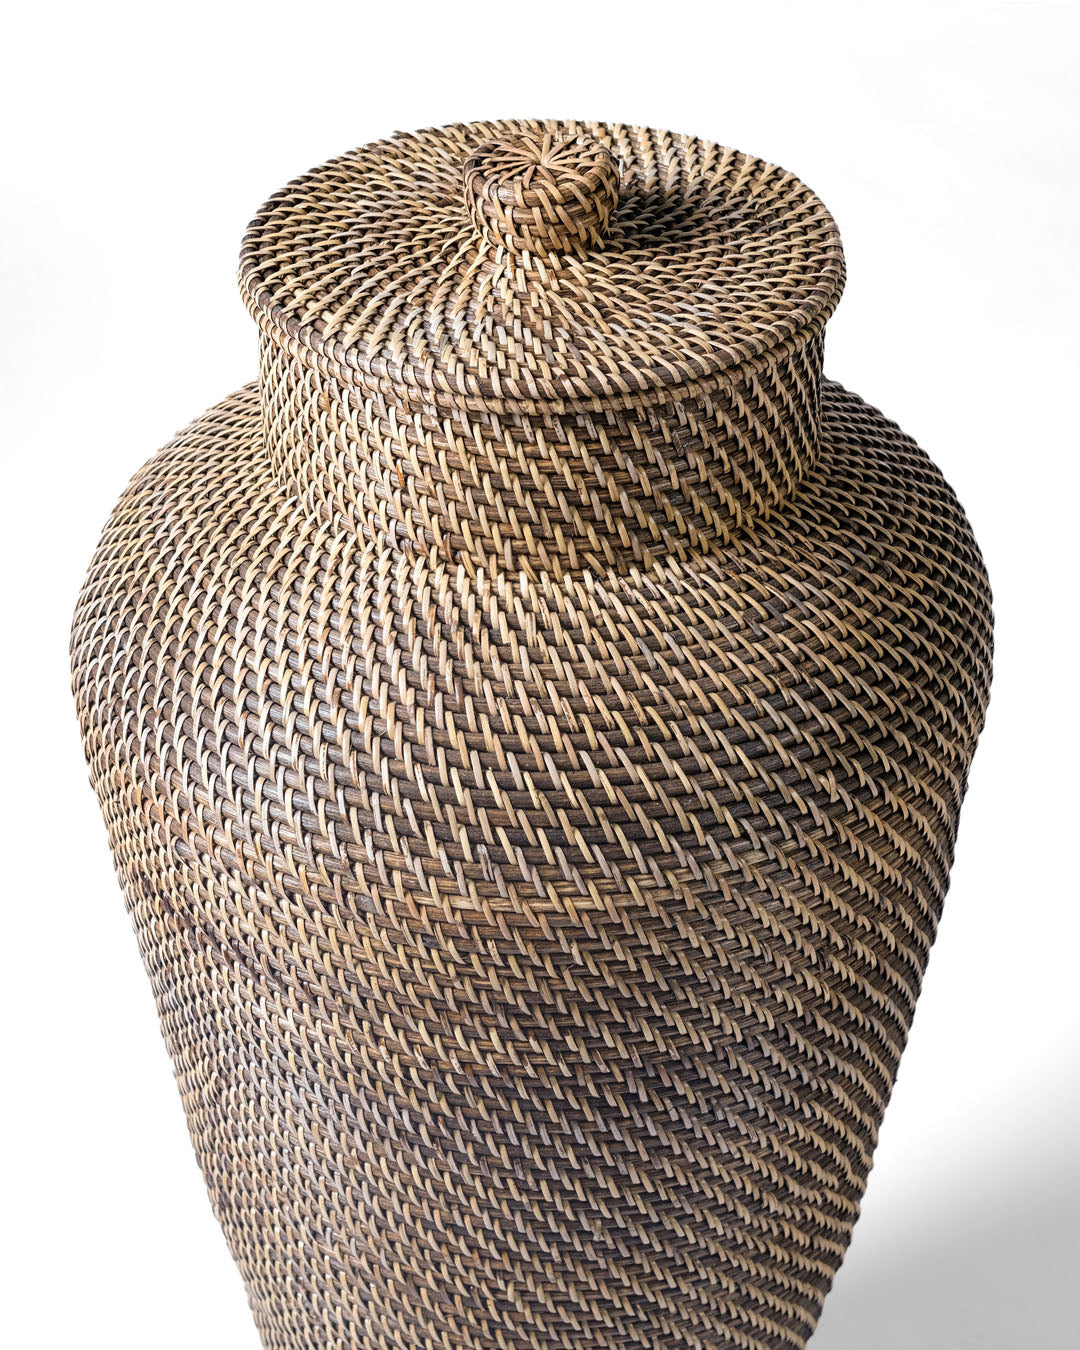 Moyo Island rattan basket with lid